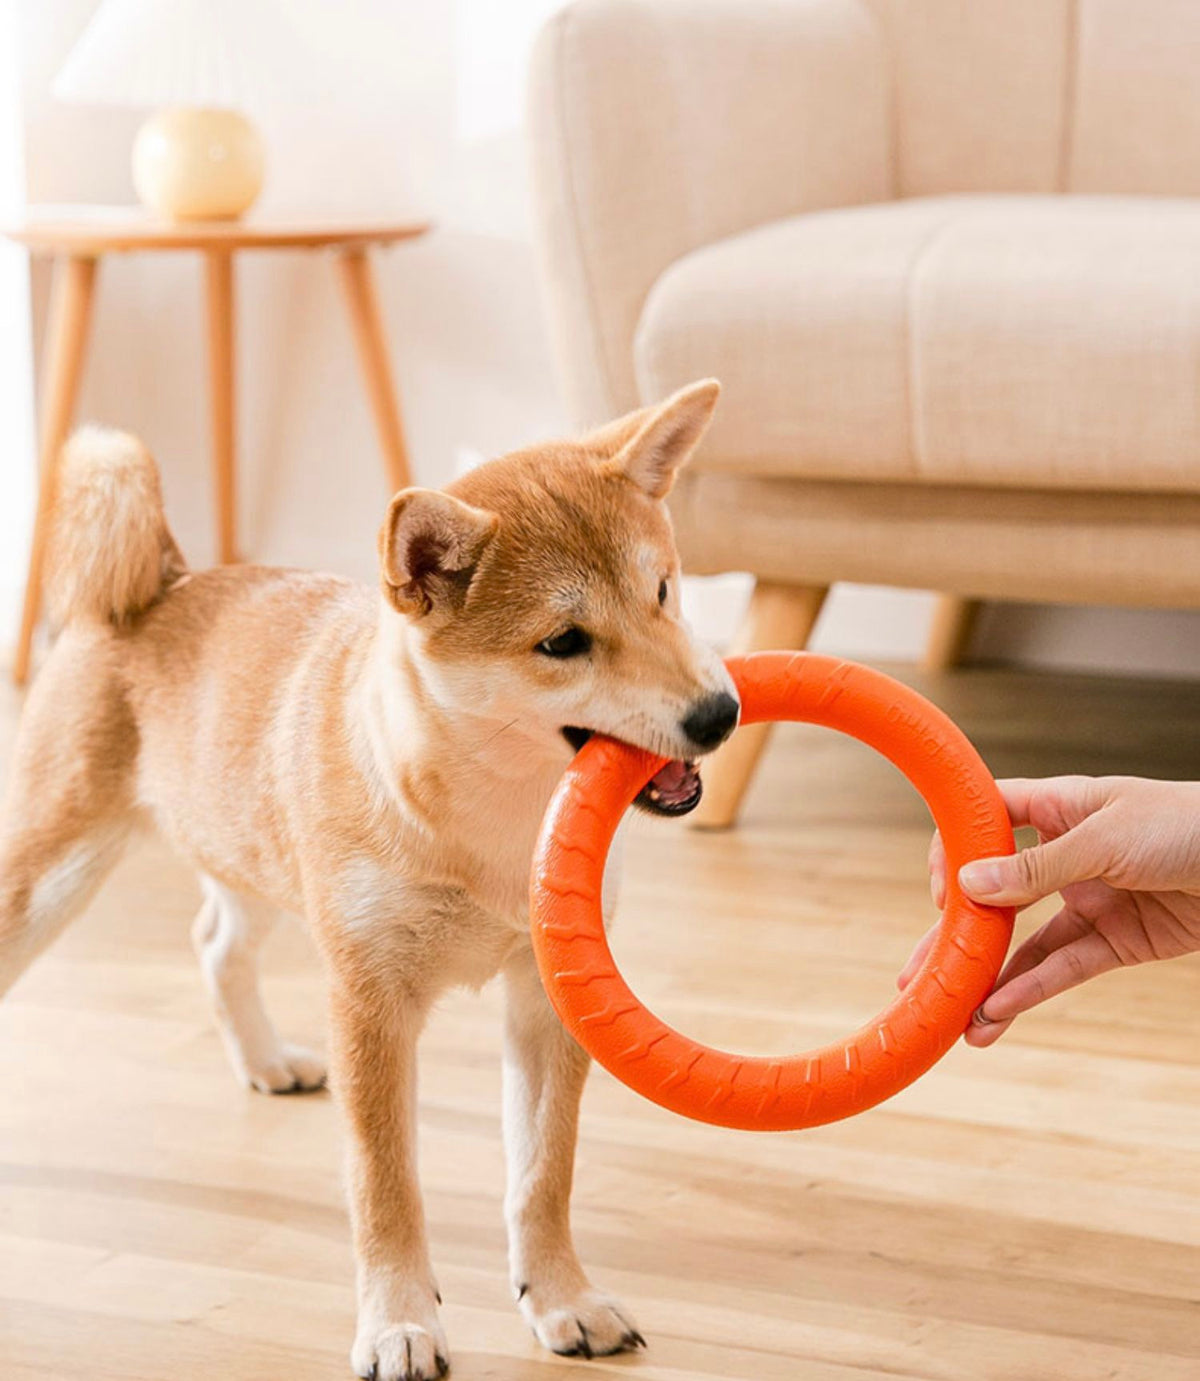 HIPIDOG Dog's Chewing Toy